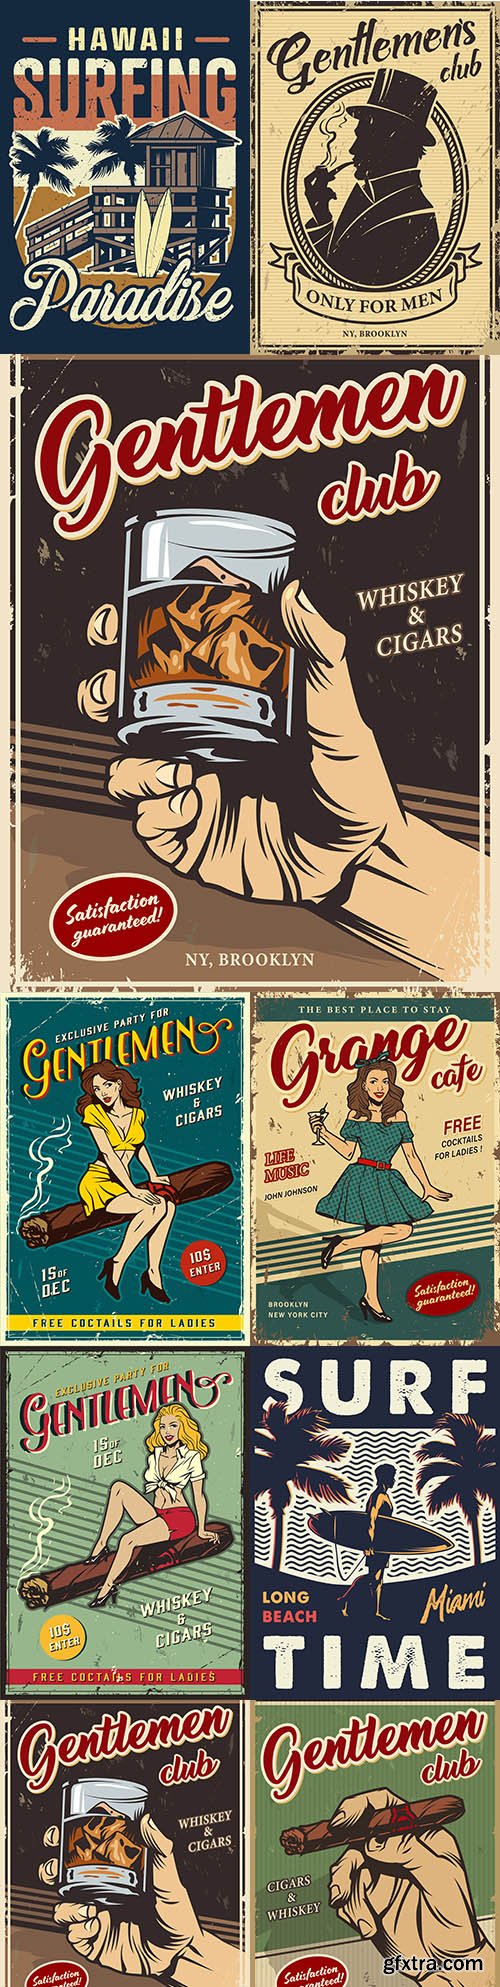 Vintage gentleman club advertising template